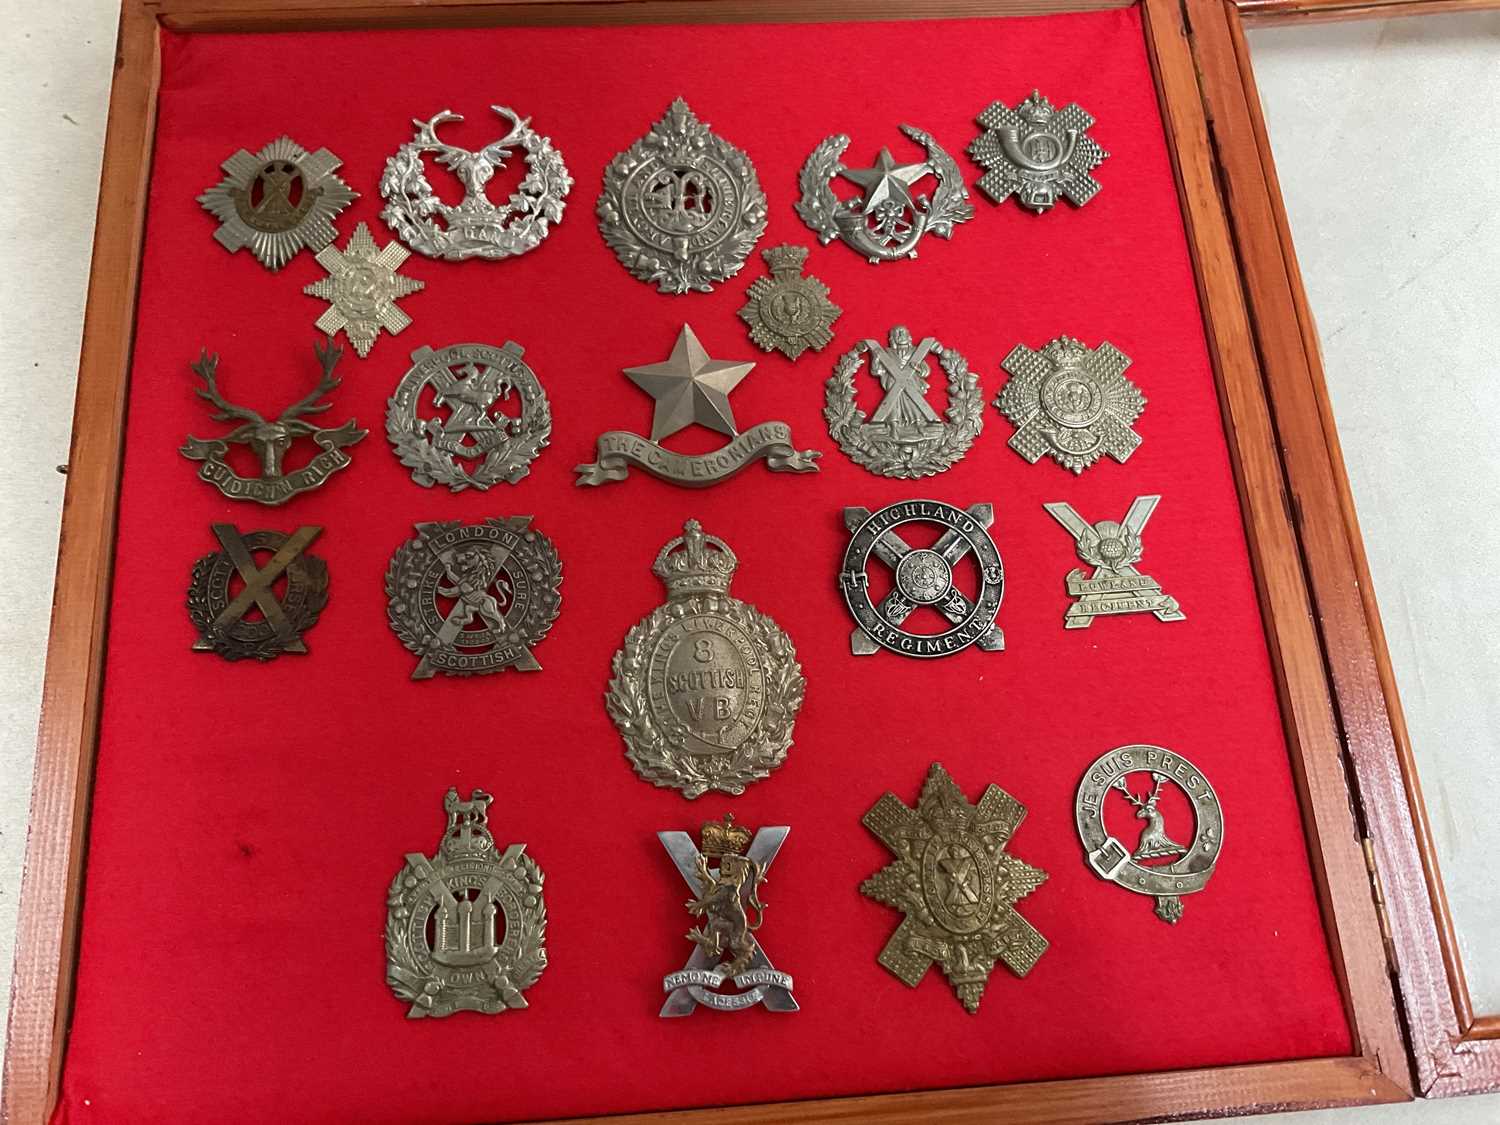 A framed and glazed display of Scottish regiment cap badges, including Highland Regiment, The - Image 2 of 8